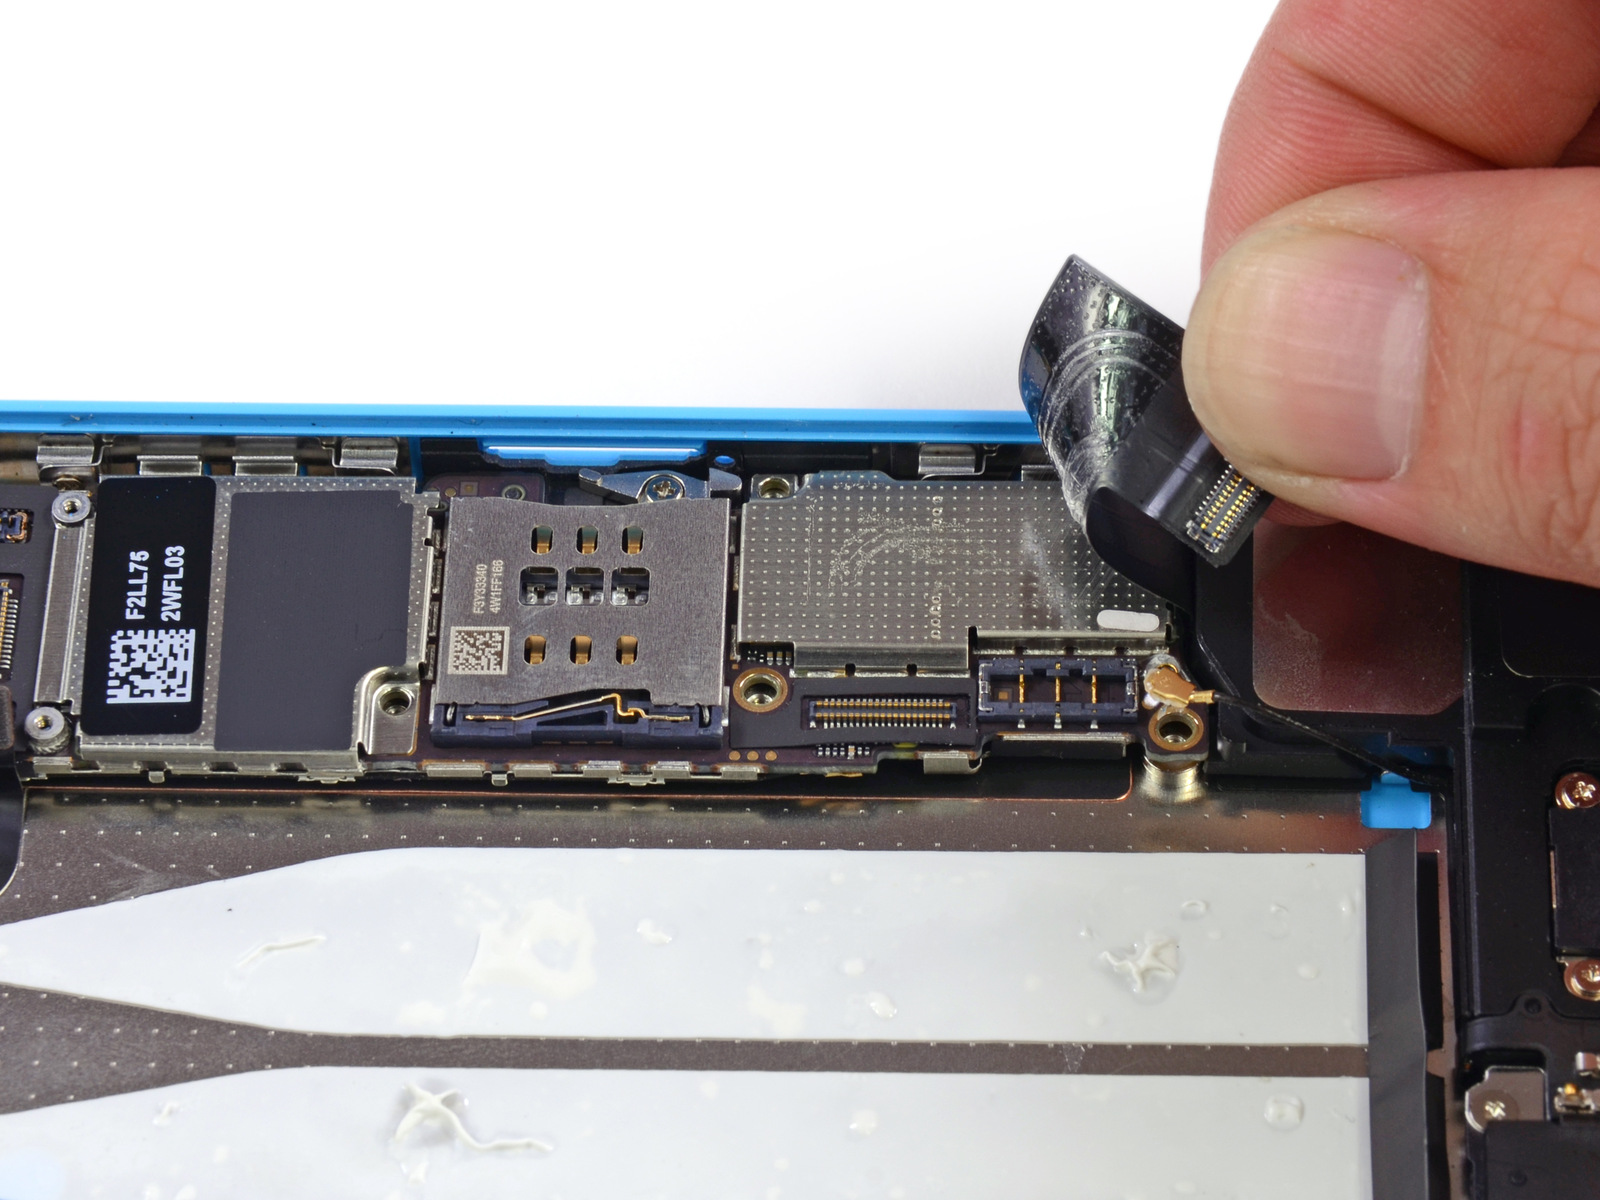 Desmontagem do iPhone 5c azul - iFixit